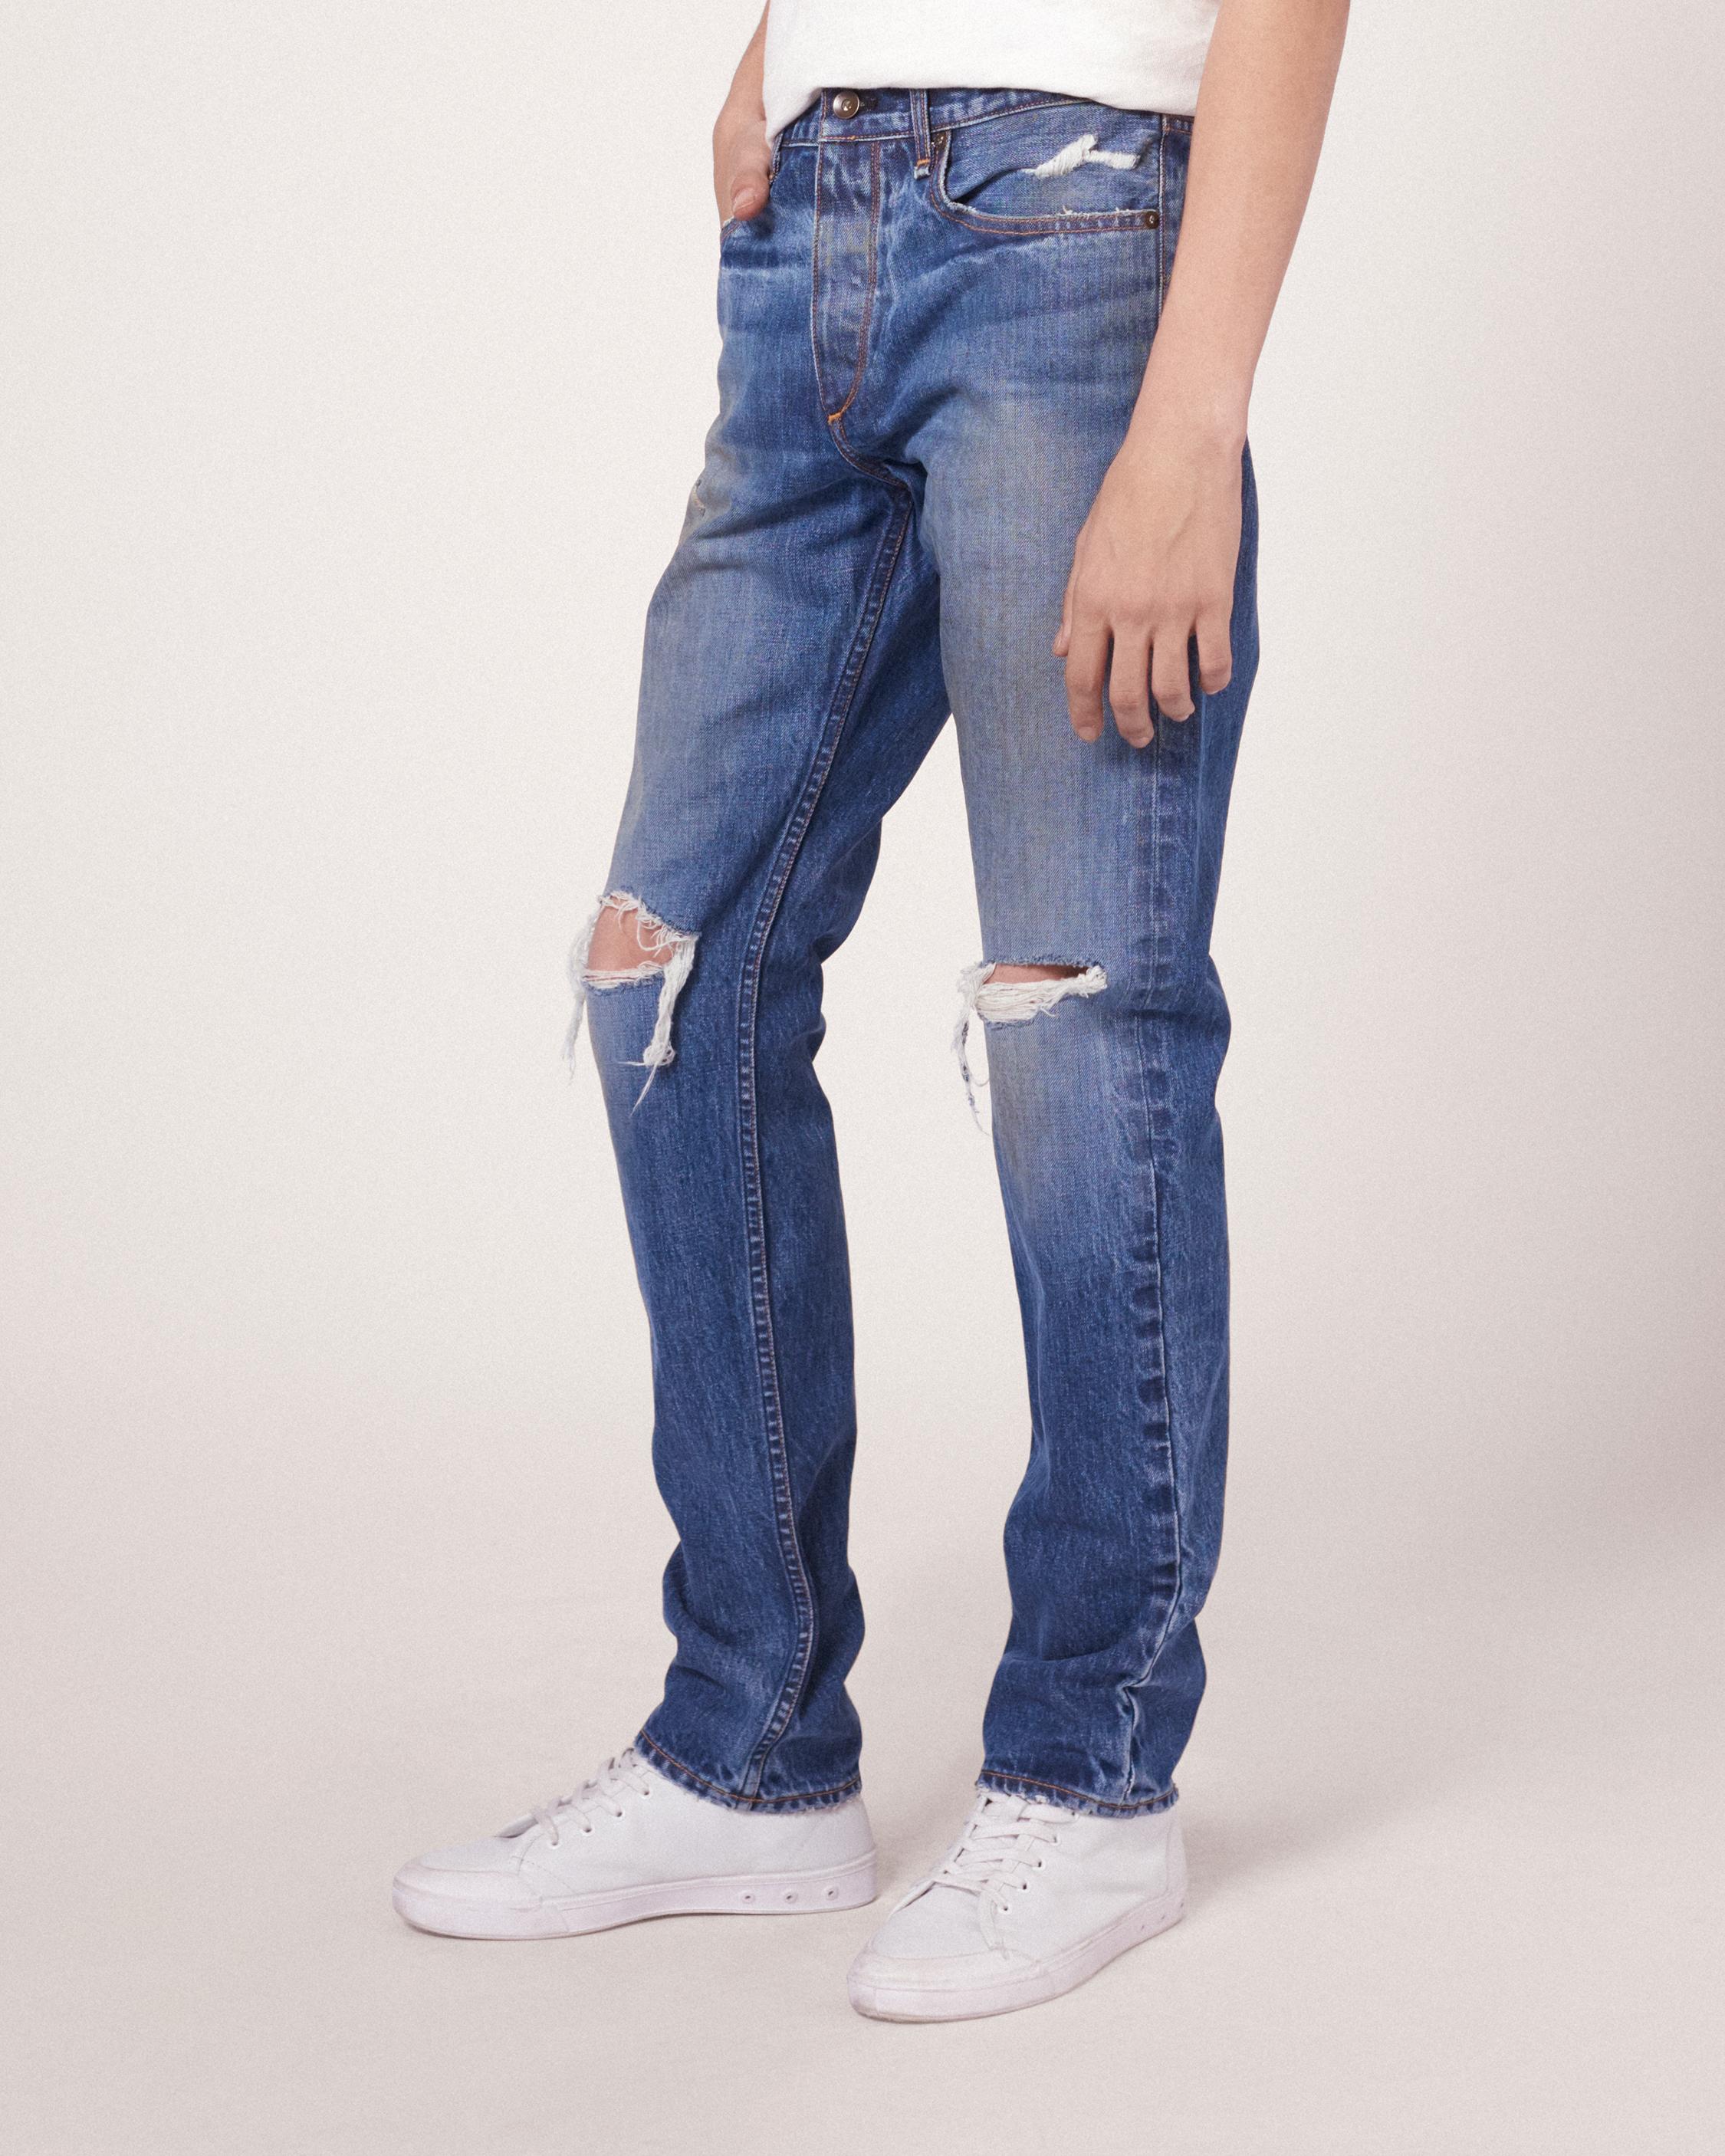 khaki denim jeans womens